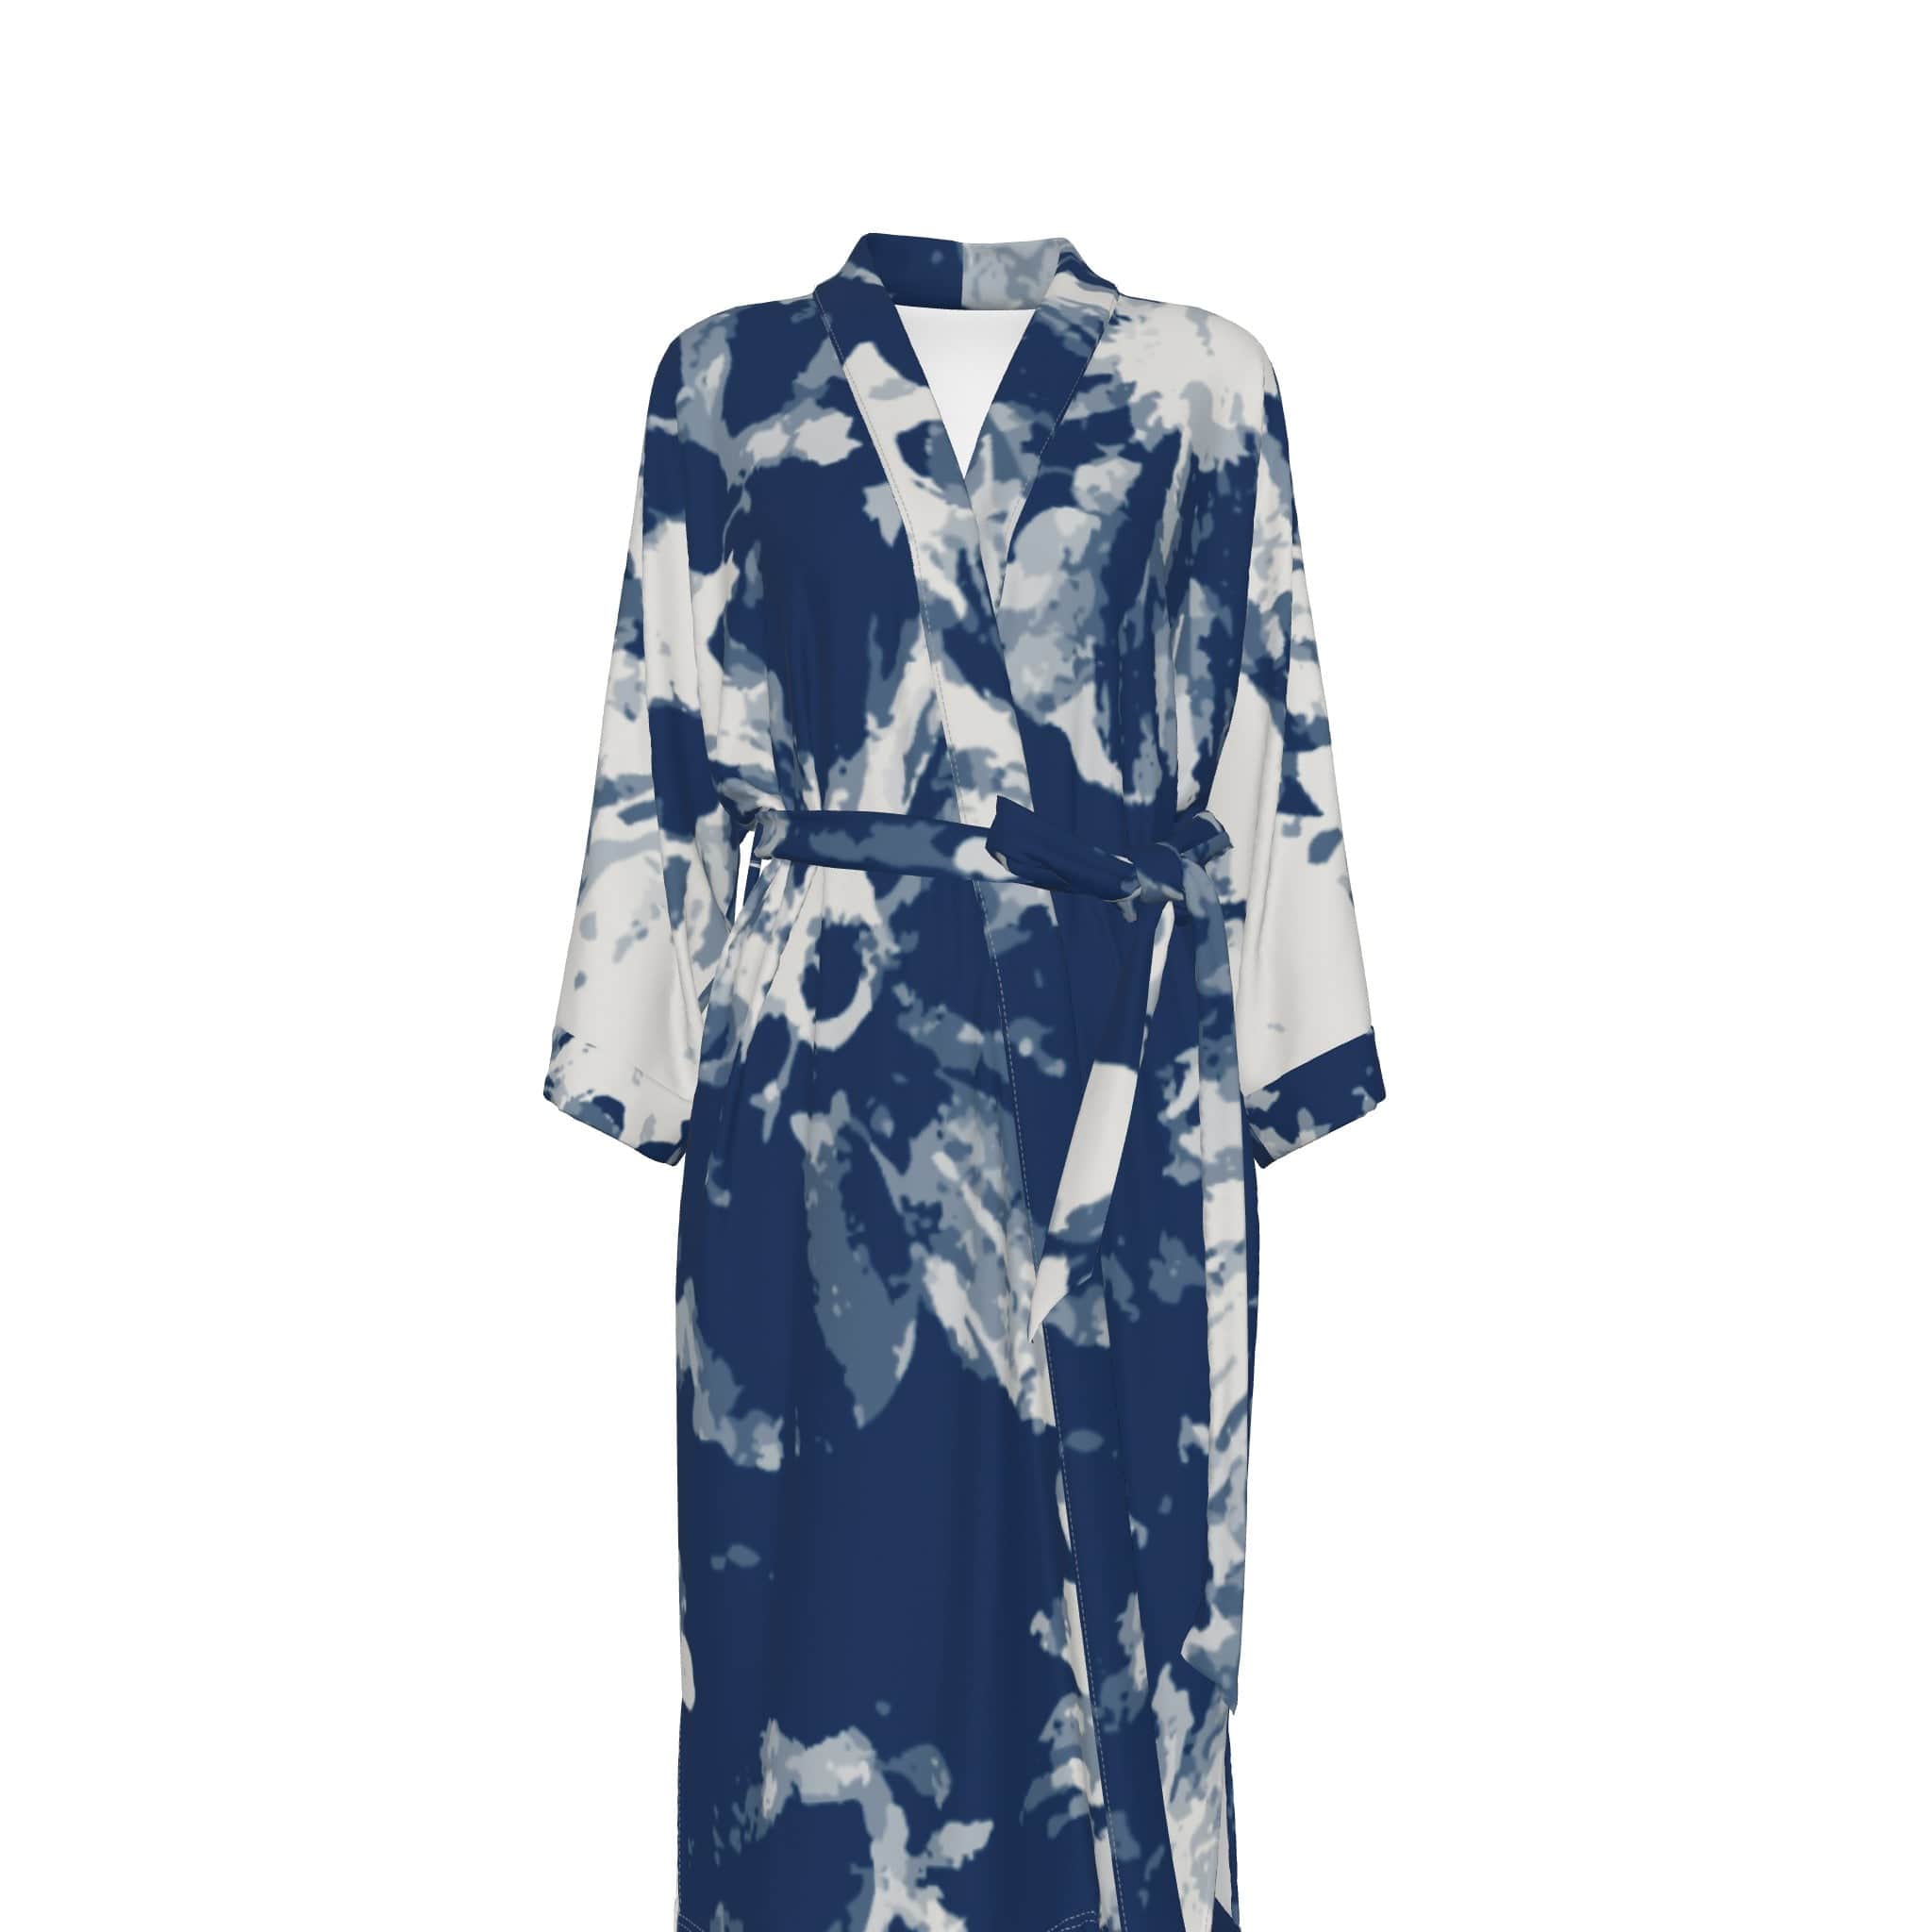 Yoycol 2XL / White All-Over Print Women's Satin Kimono Robe